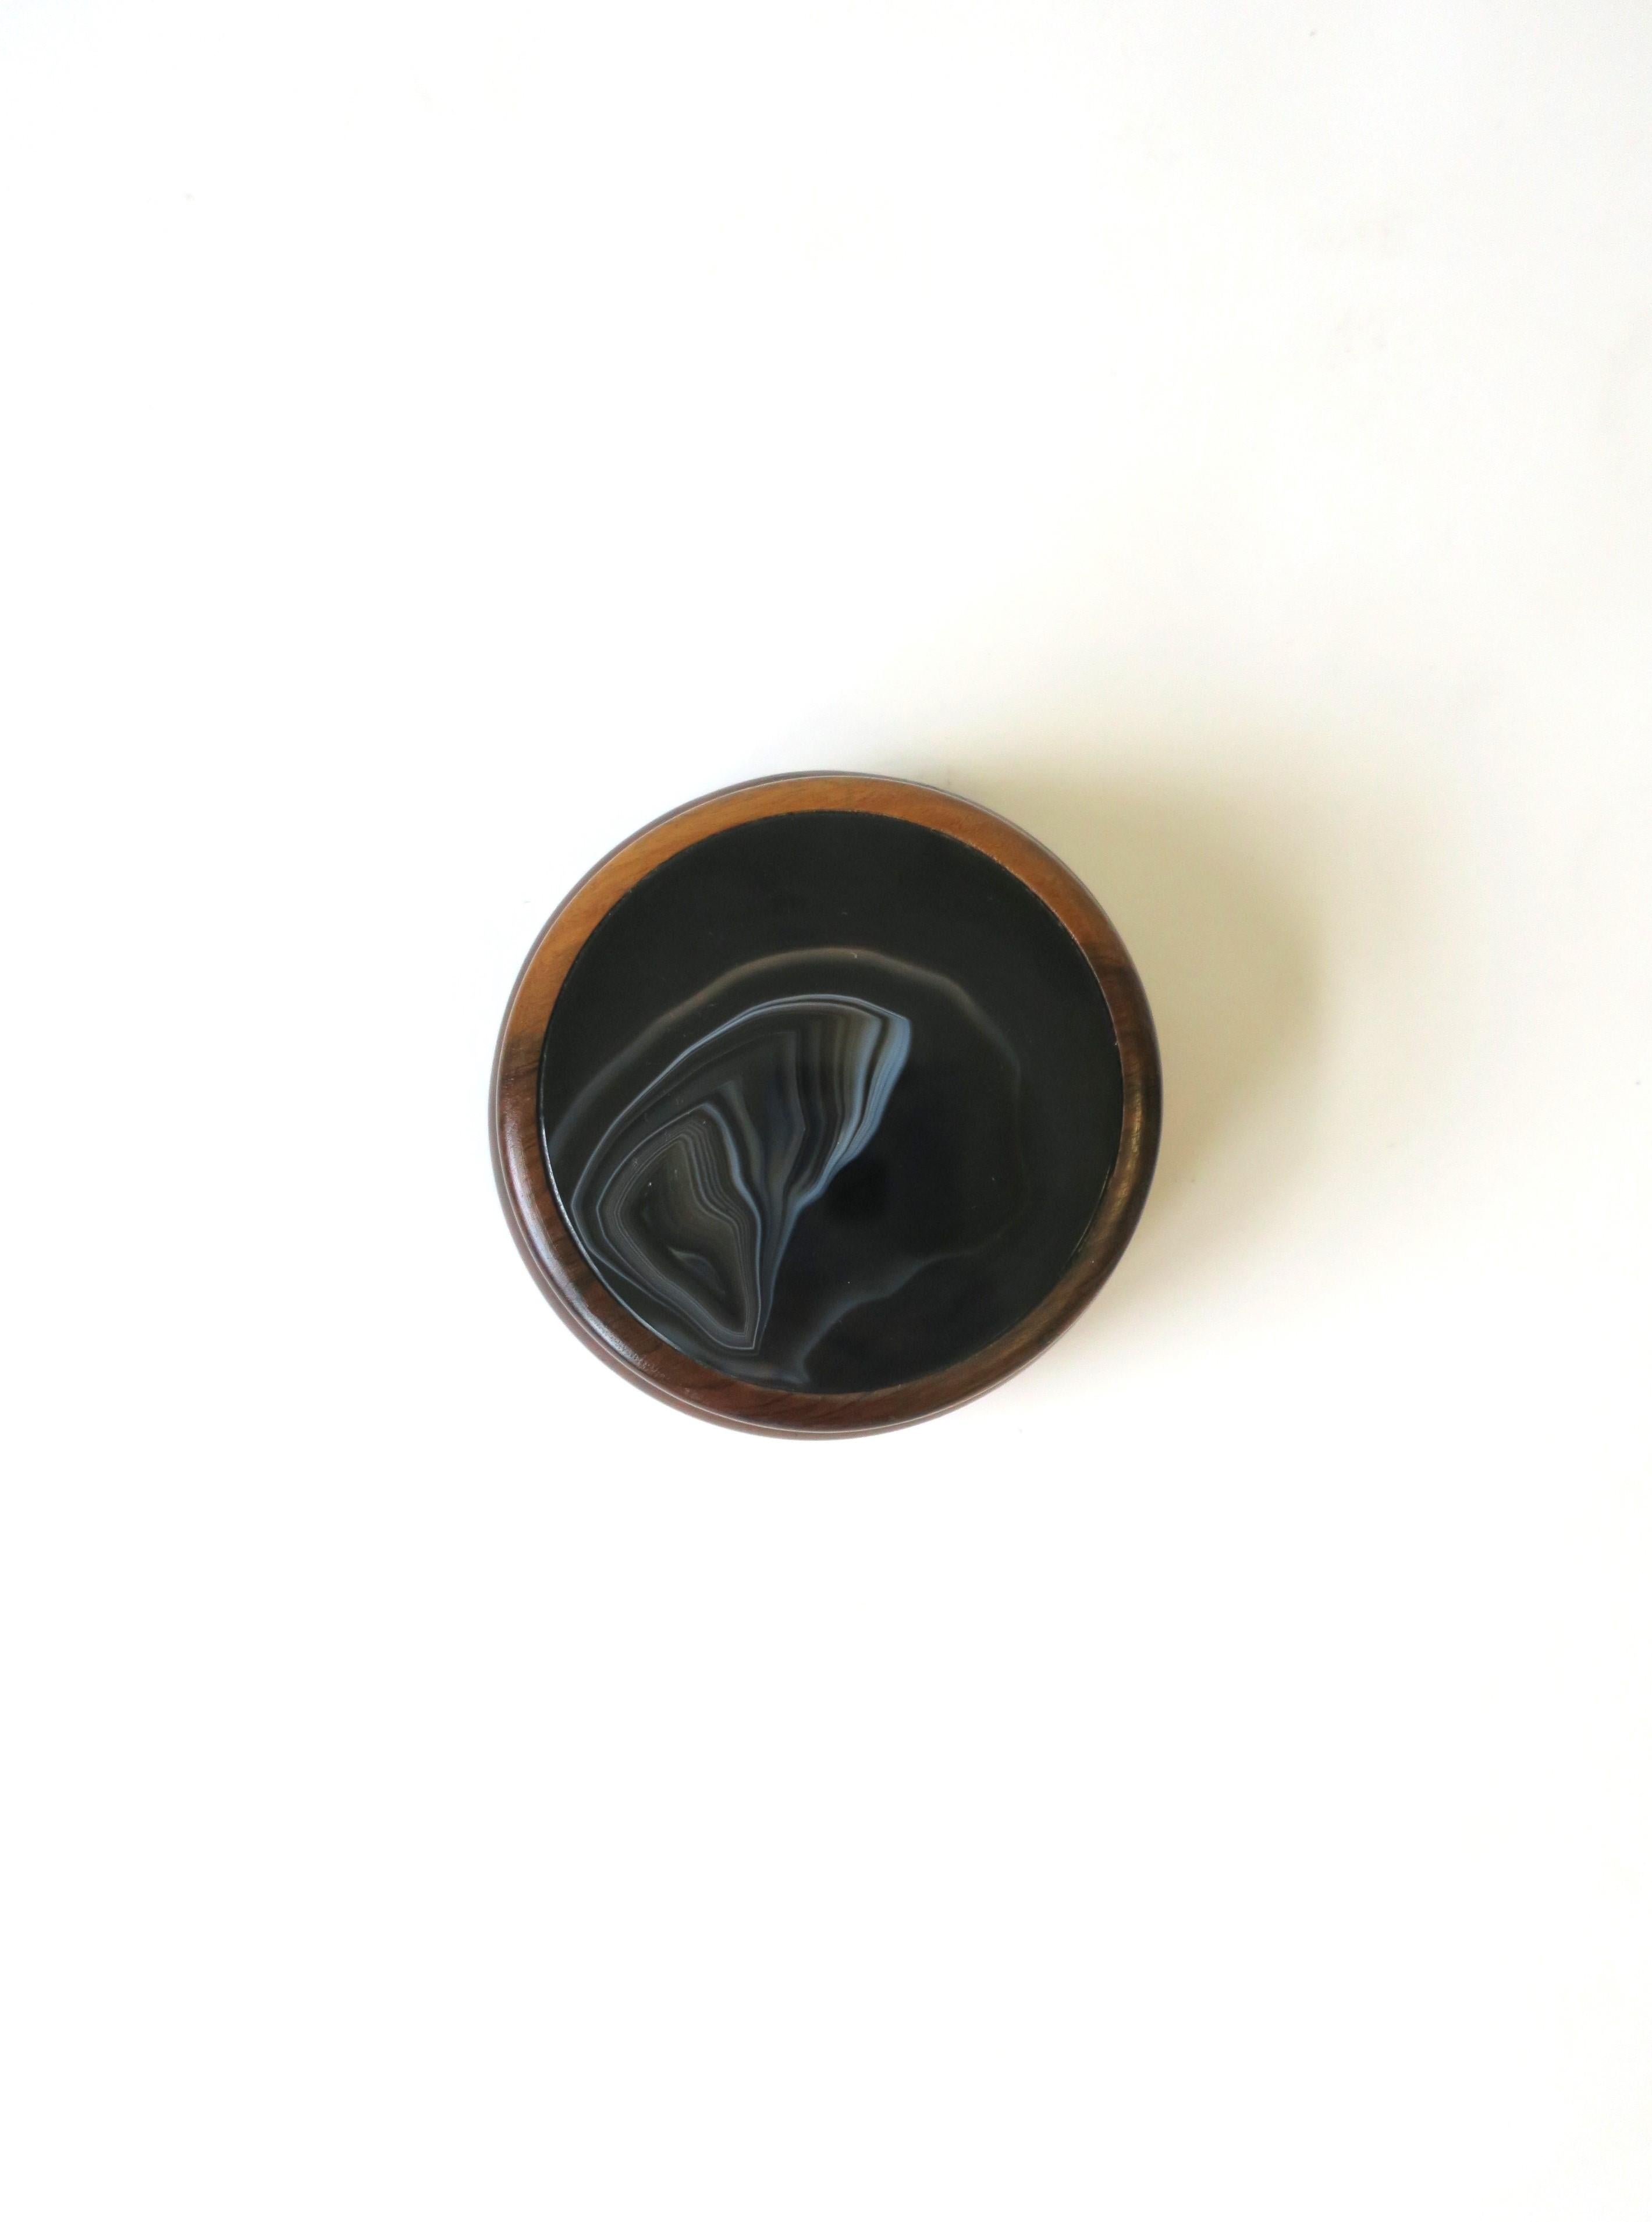 Eine runde Schmuckschatulle aus brasilianischem Hartholz und schwarzem und weißem Achat, im modernen Stil der Postmoderne, circa, Ende des 20. Jahrhunderts, Brasilien, 1980er, Anfang der 1990er Jahre. Eine runde Hartholzschachtel mit einem Deckel